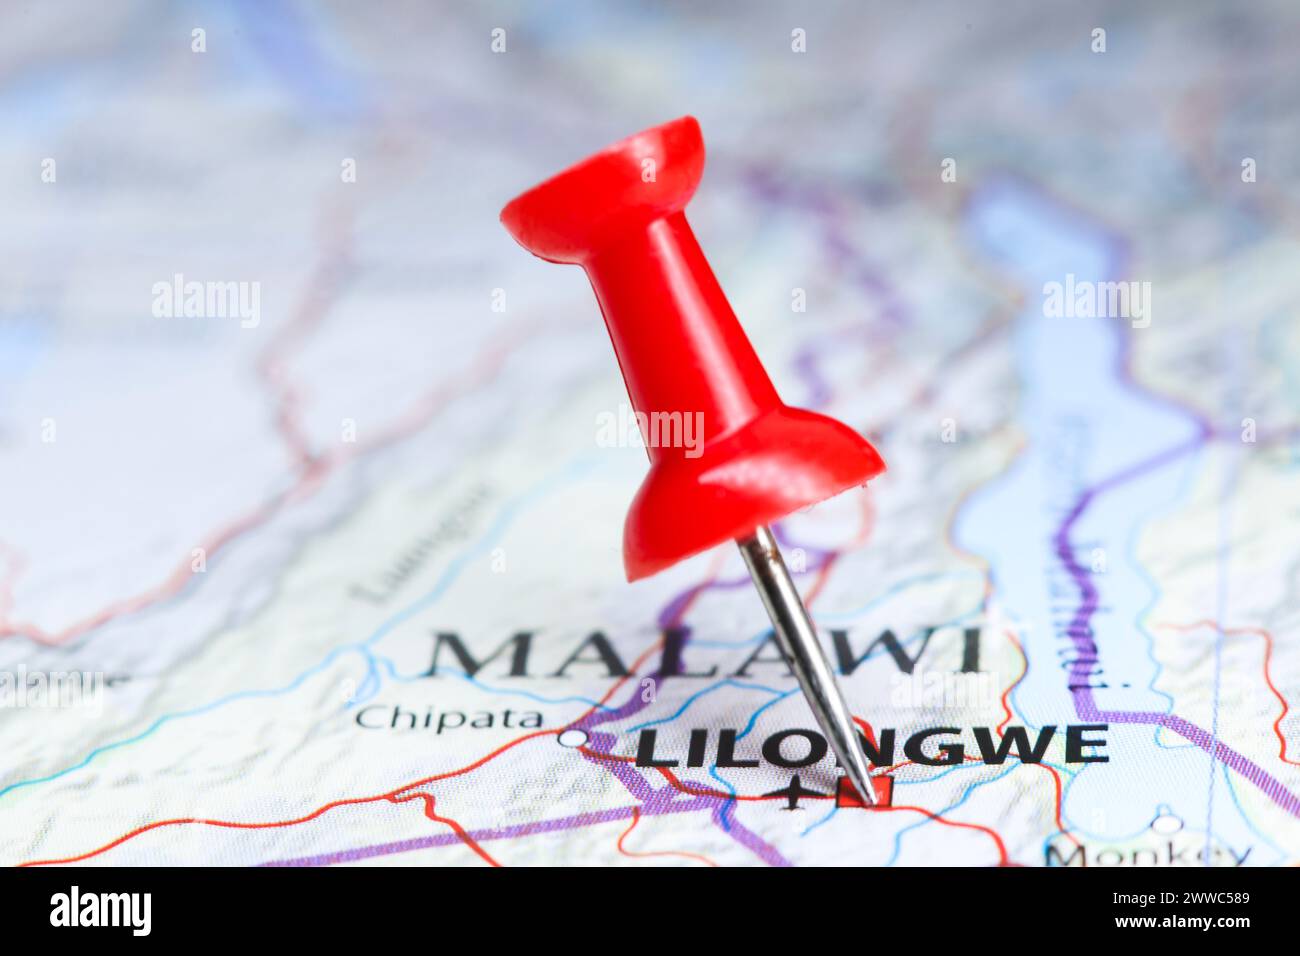 Lilongwe, Malawi pin on map Stock Photo